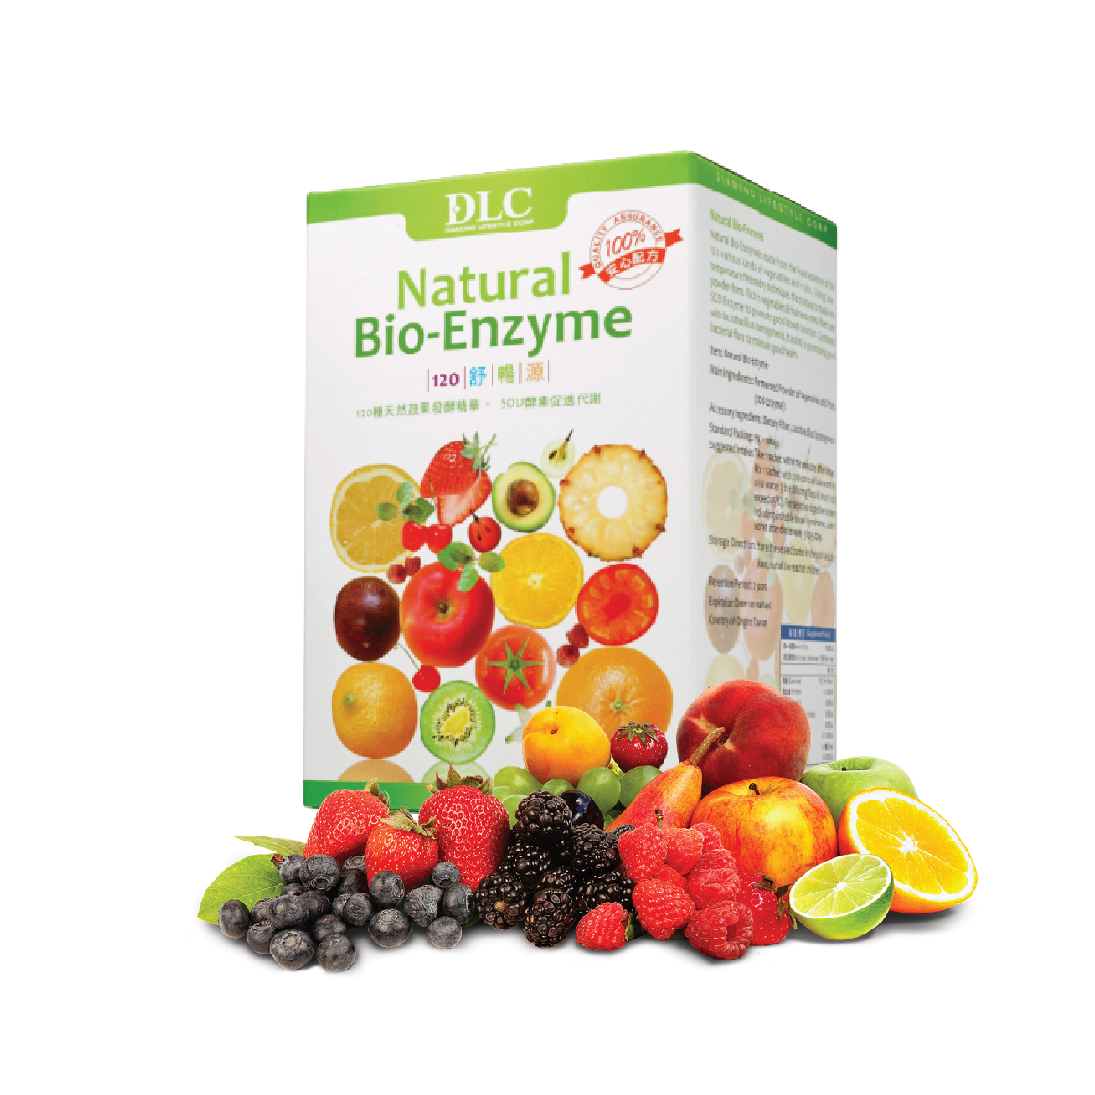 Bio enzyme - Hỗ trợ thải độc đường ruột => 